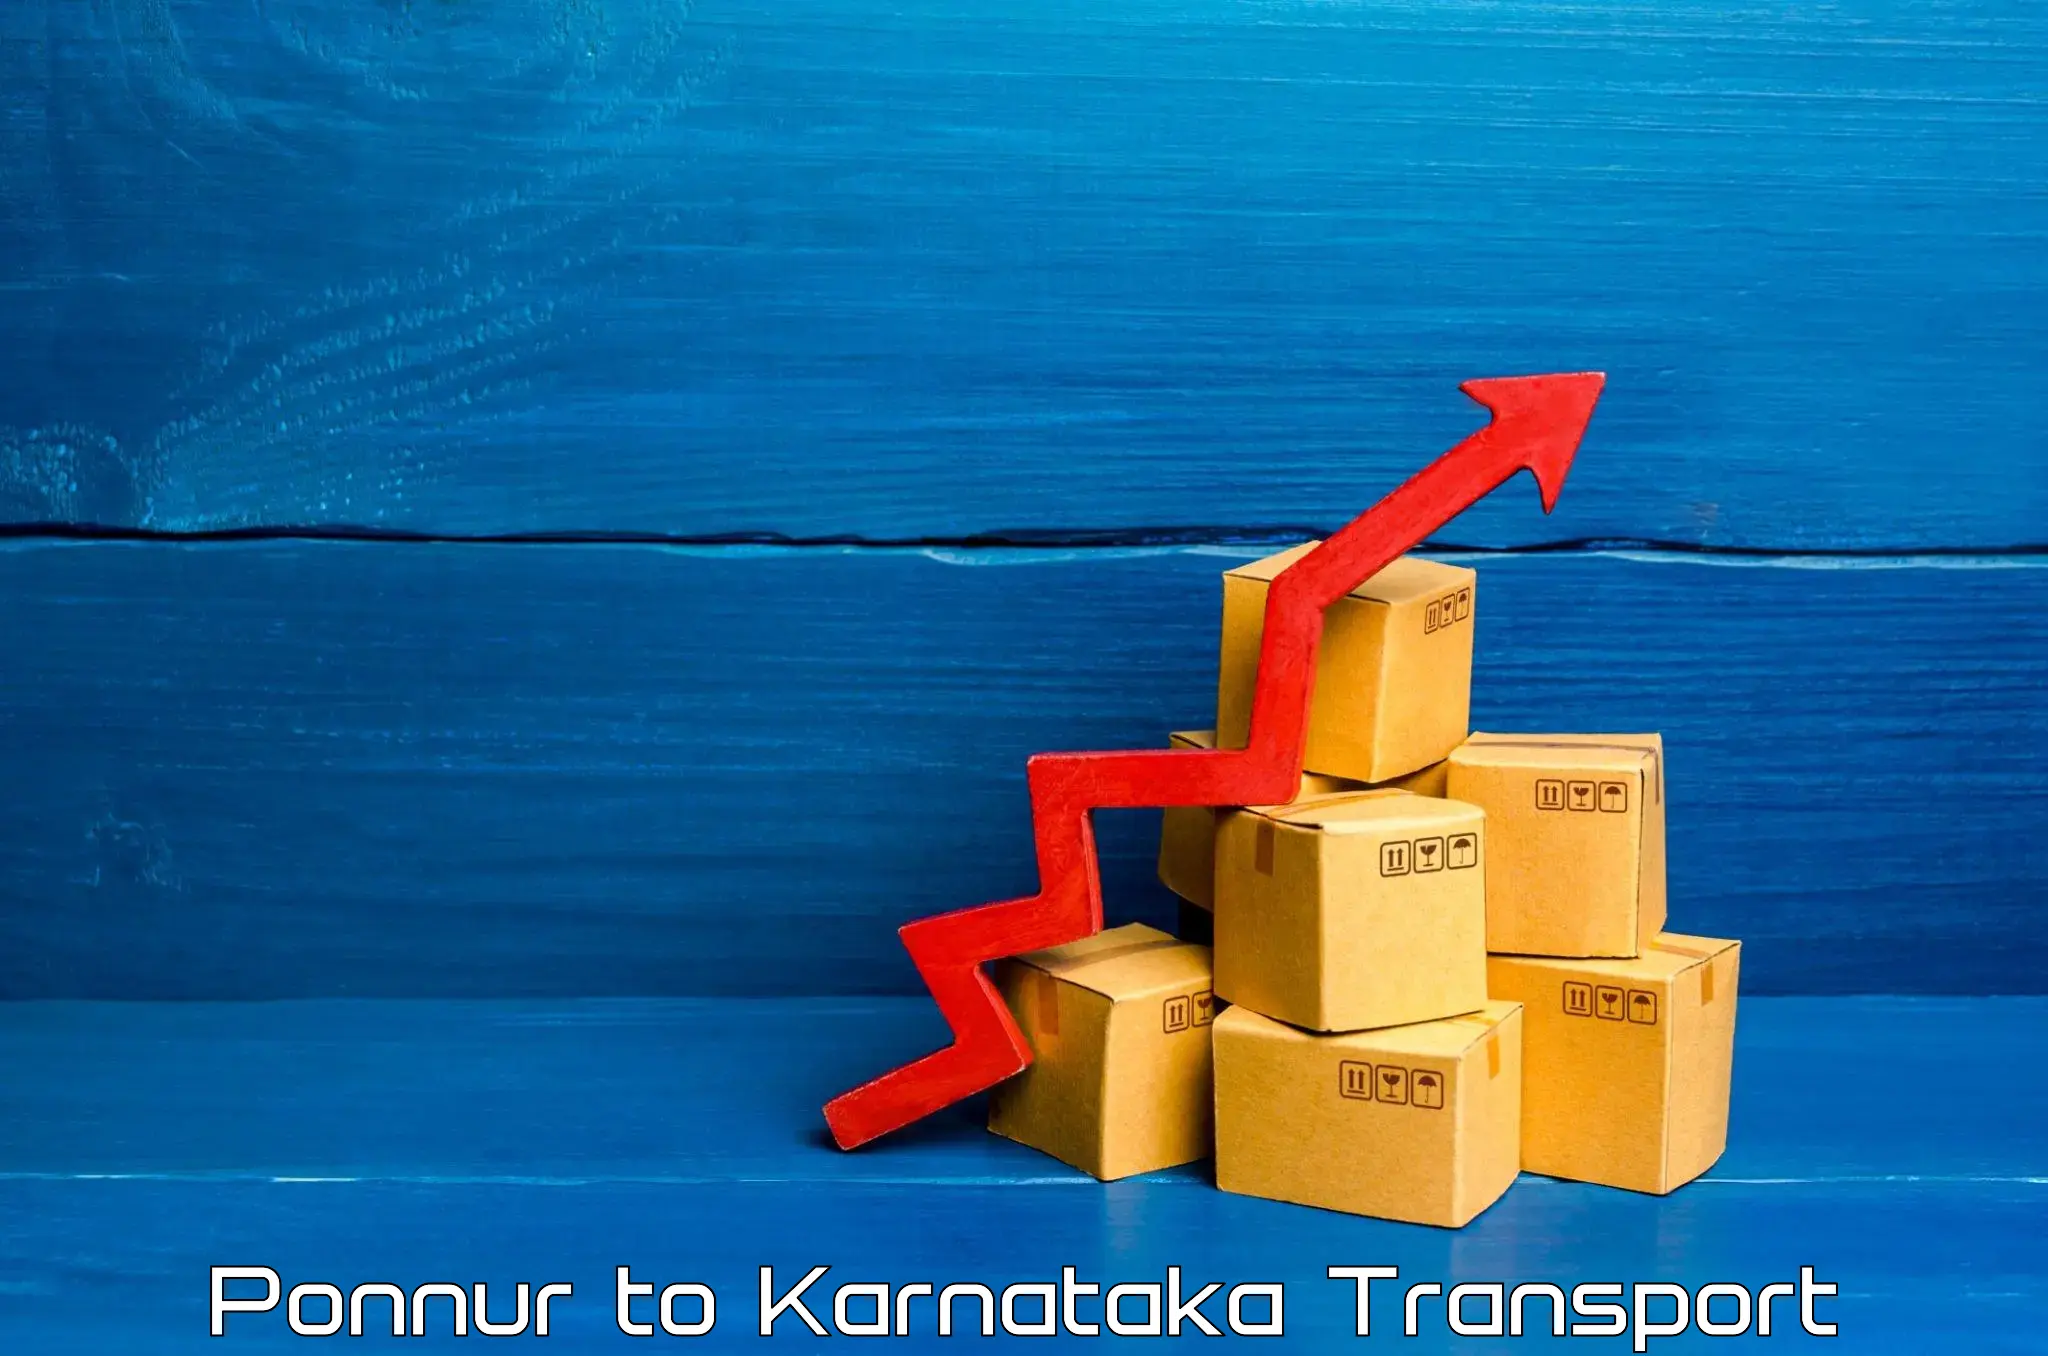 Goods transport services Ponnur to Ramdurg